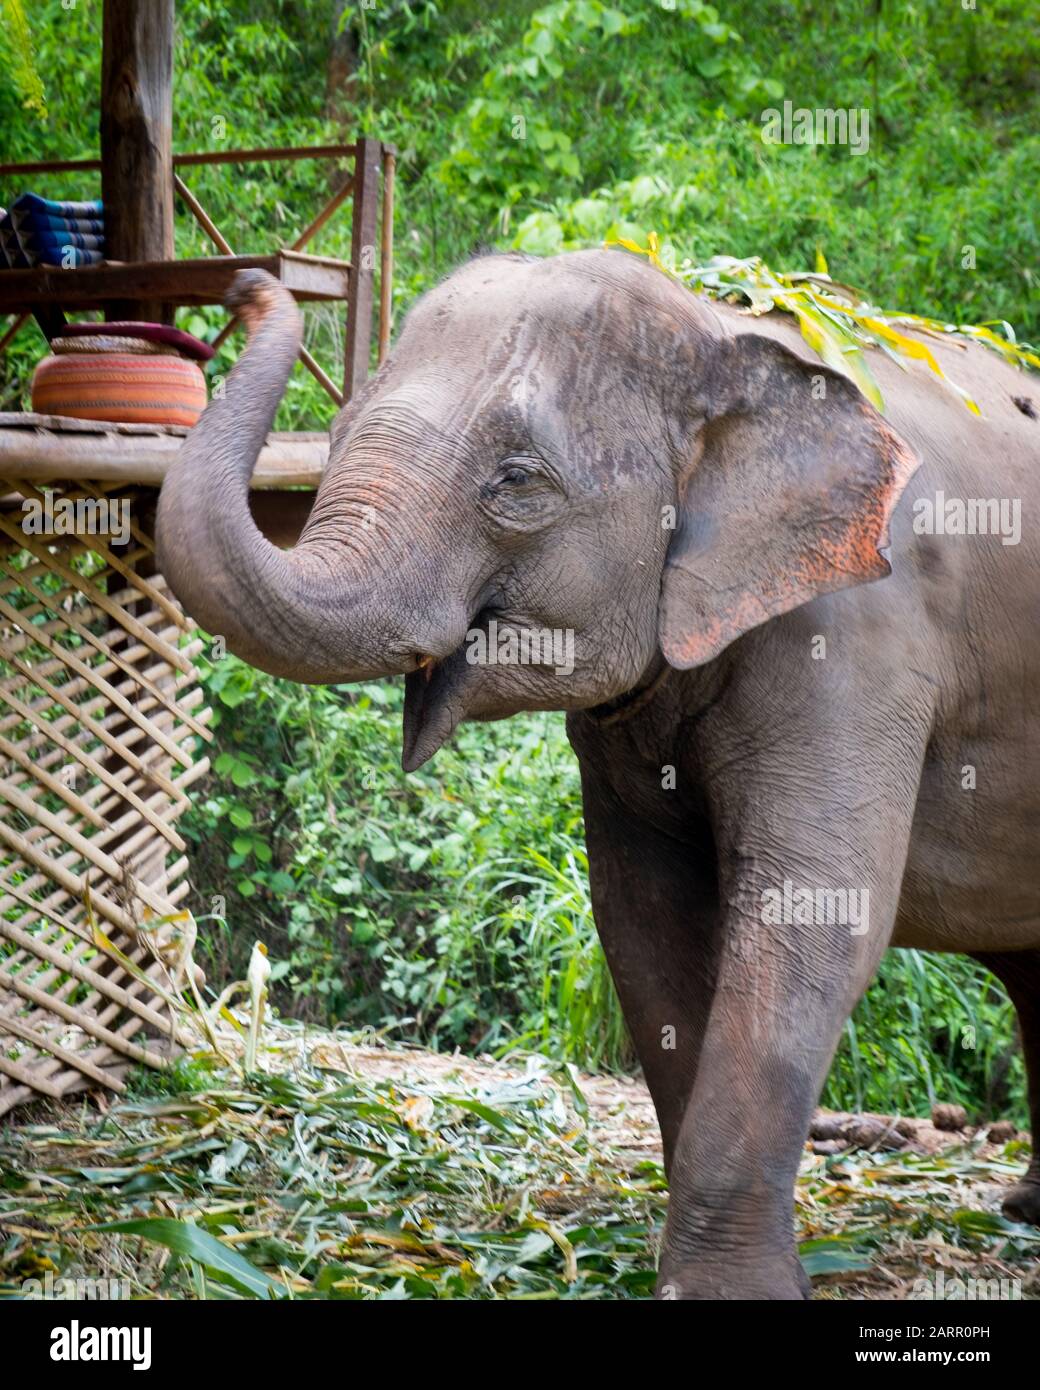 De beaux jeunes éléphants asiatiques dans un sanctuaire thaïlandais près de Chiang Mai, Thaïlande. Éléphants se nourrissant de la tige de canne à sucre et jouant dans la rivière voisine Banque D'Images